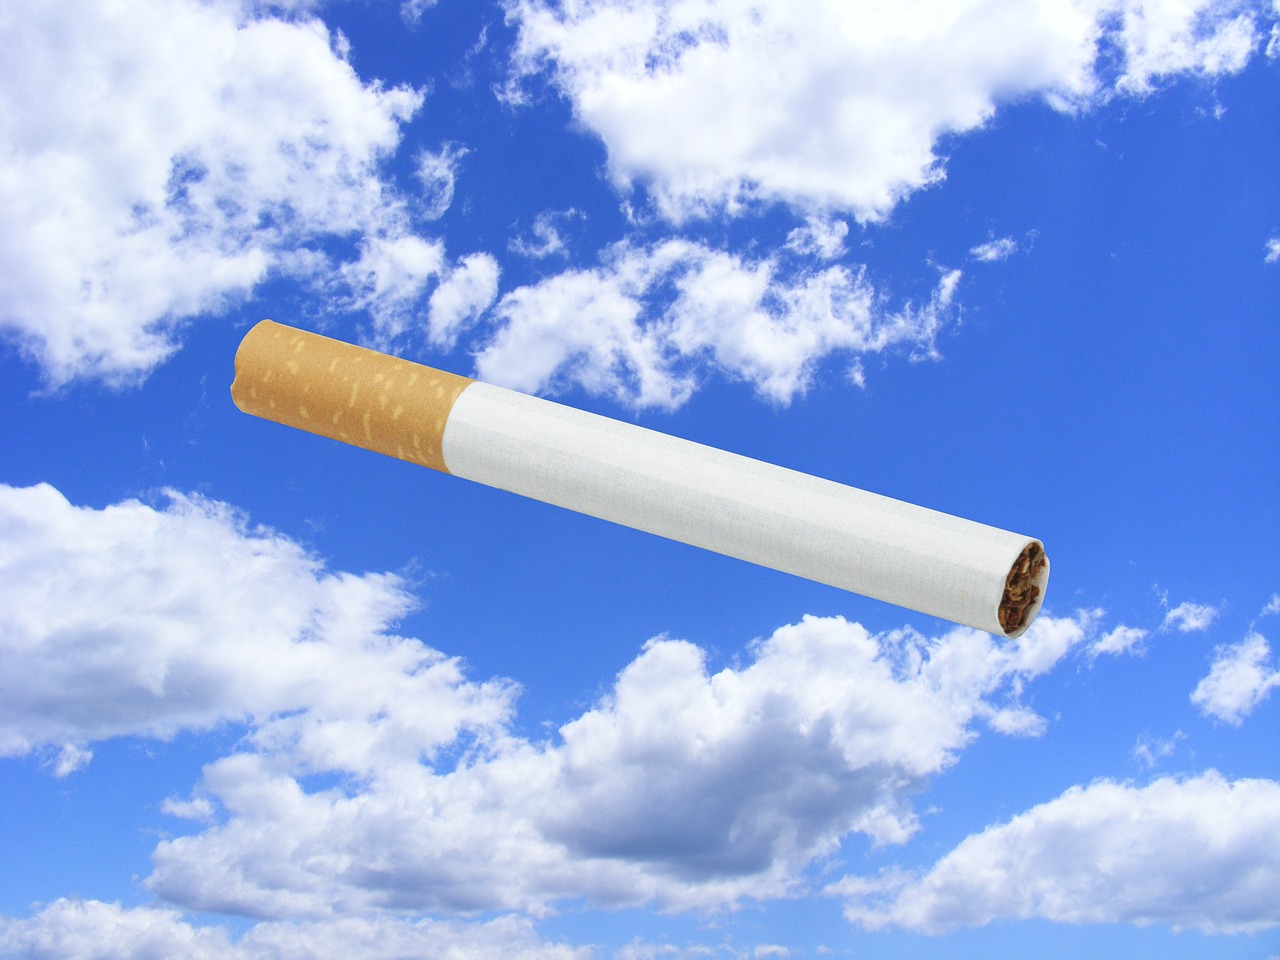 Προσοχή στις γόπες των τσιγάρων, η κατάποση τους προκαλεί νεφρική ανεπάρκεια στα παιδιά